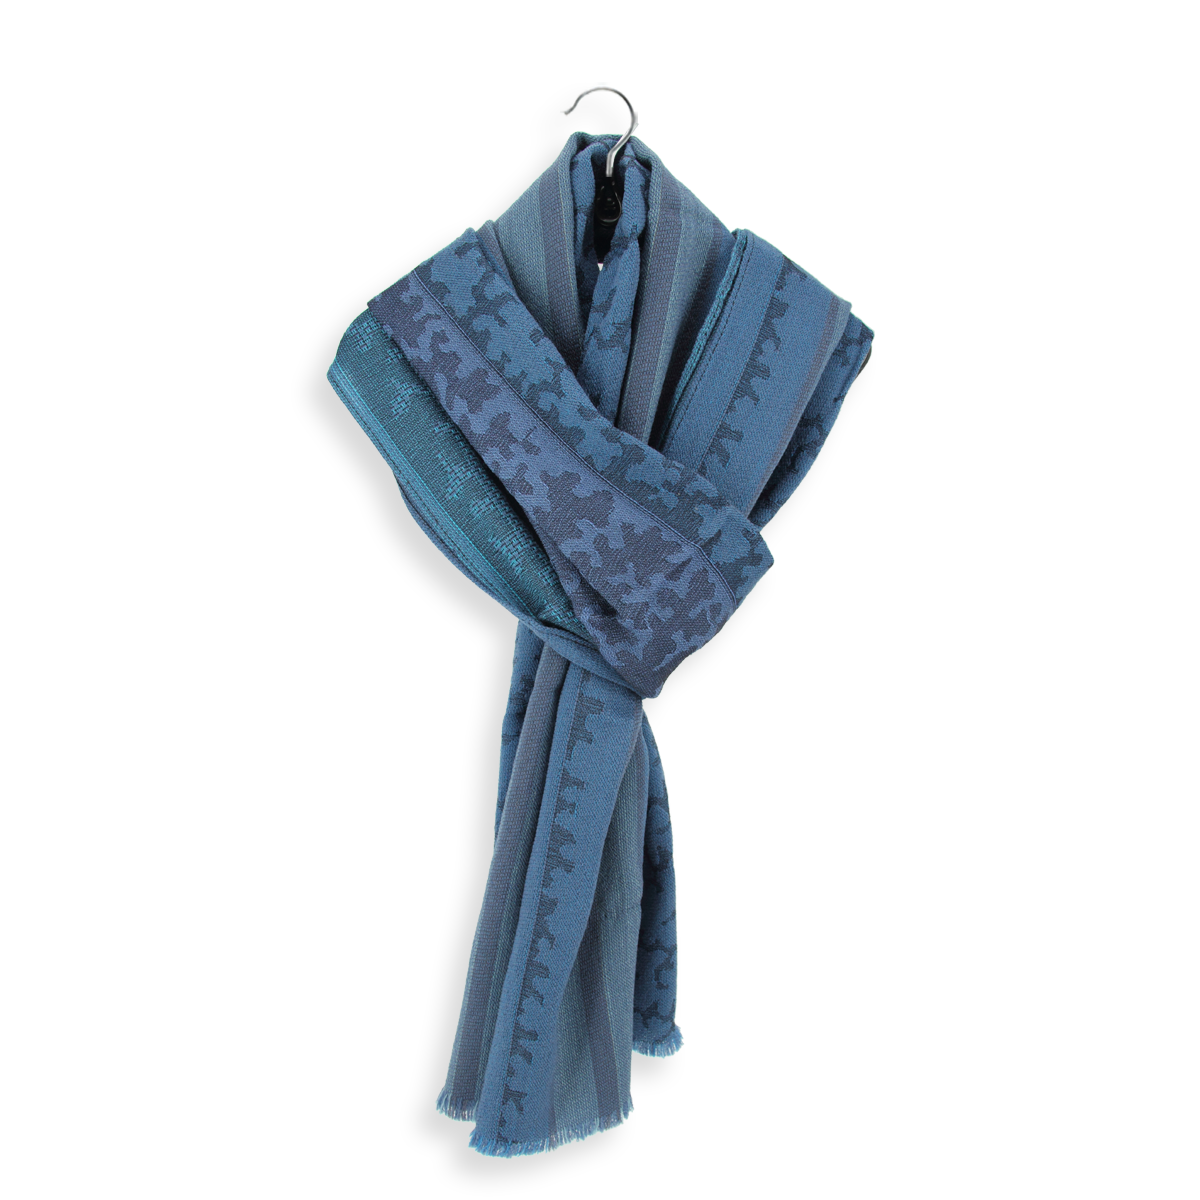 Douce écharpe femme bleu jean en laine et soie | Qualité exceptionnelle.